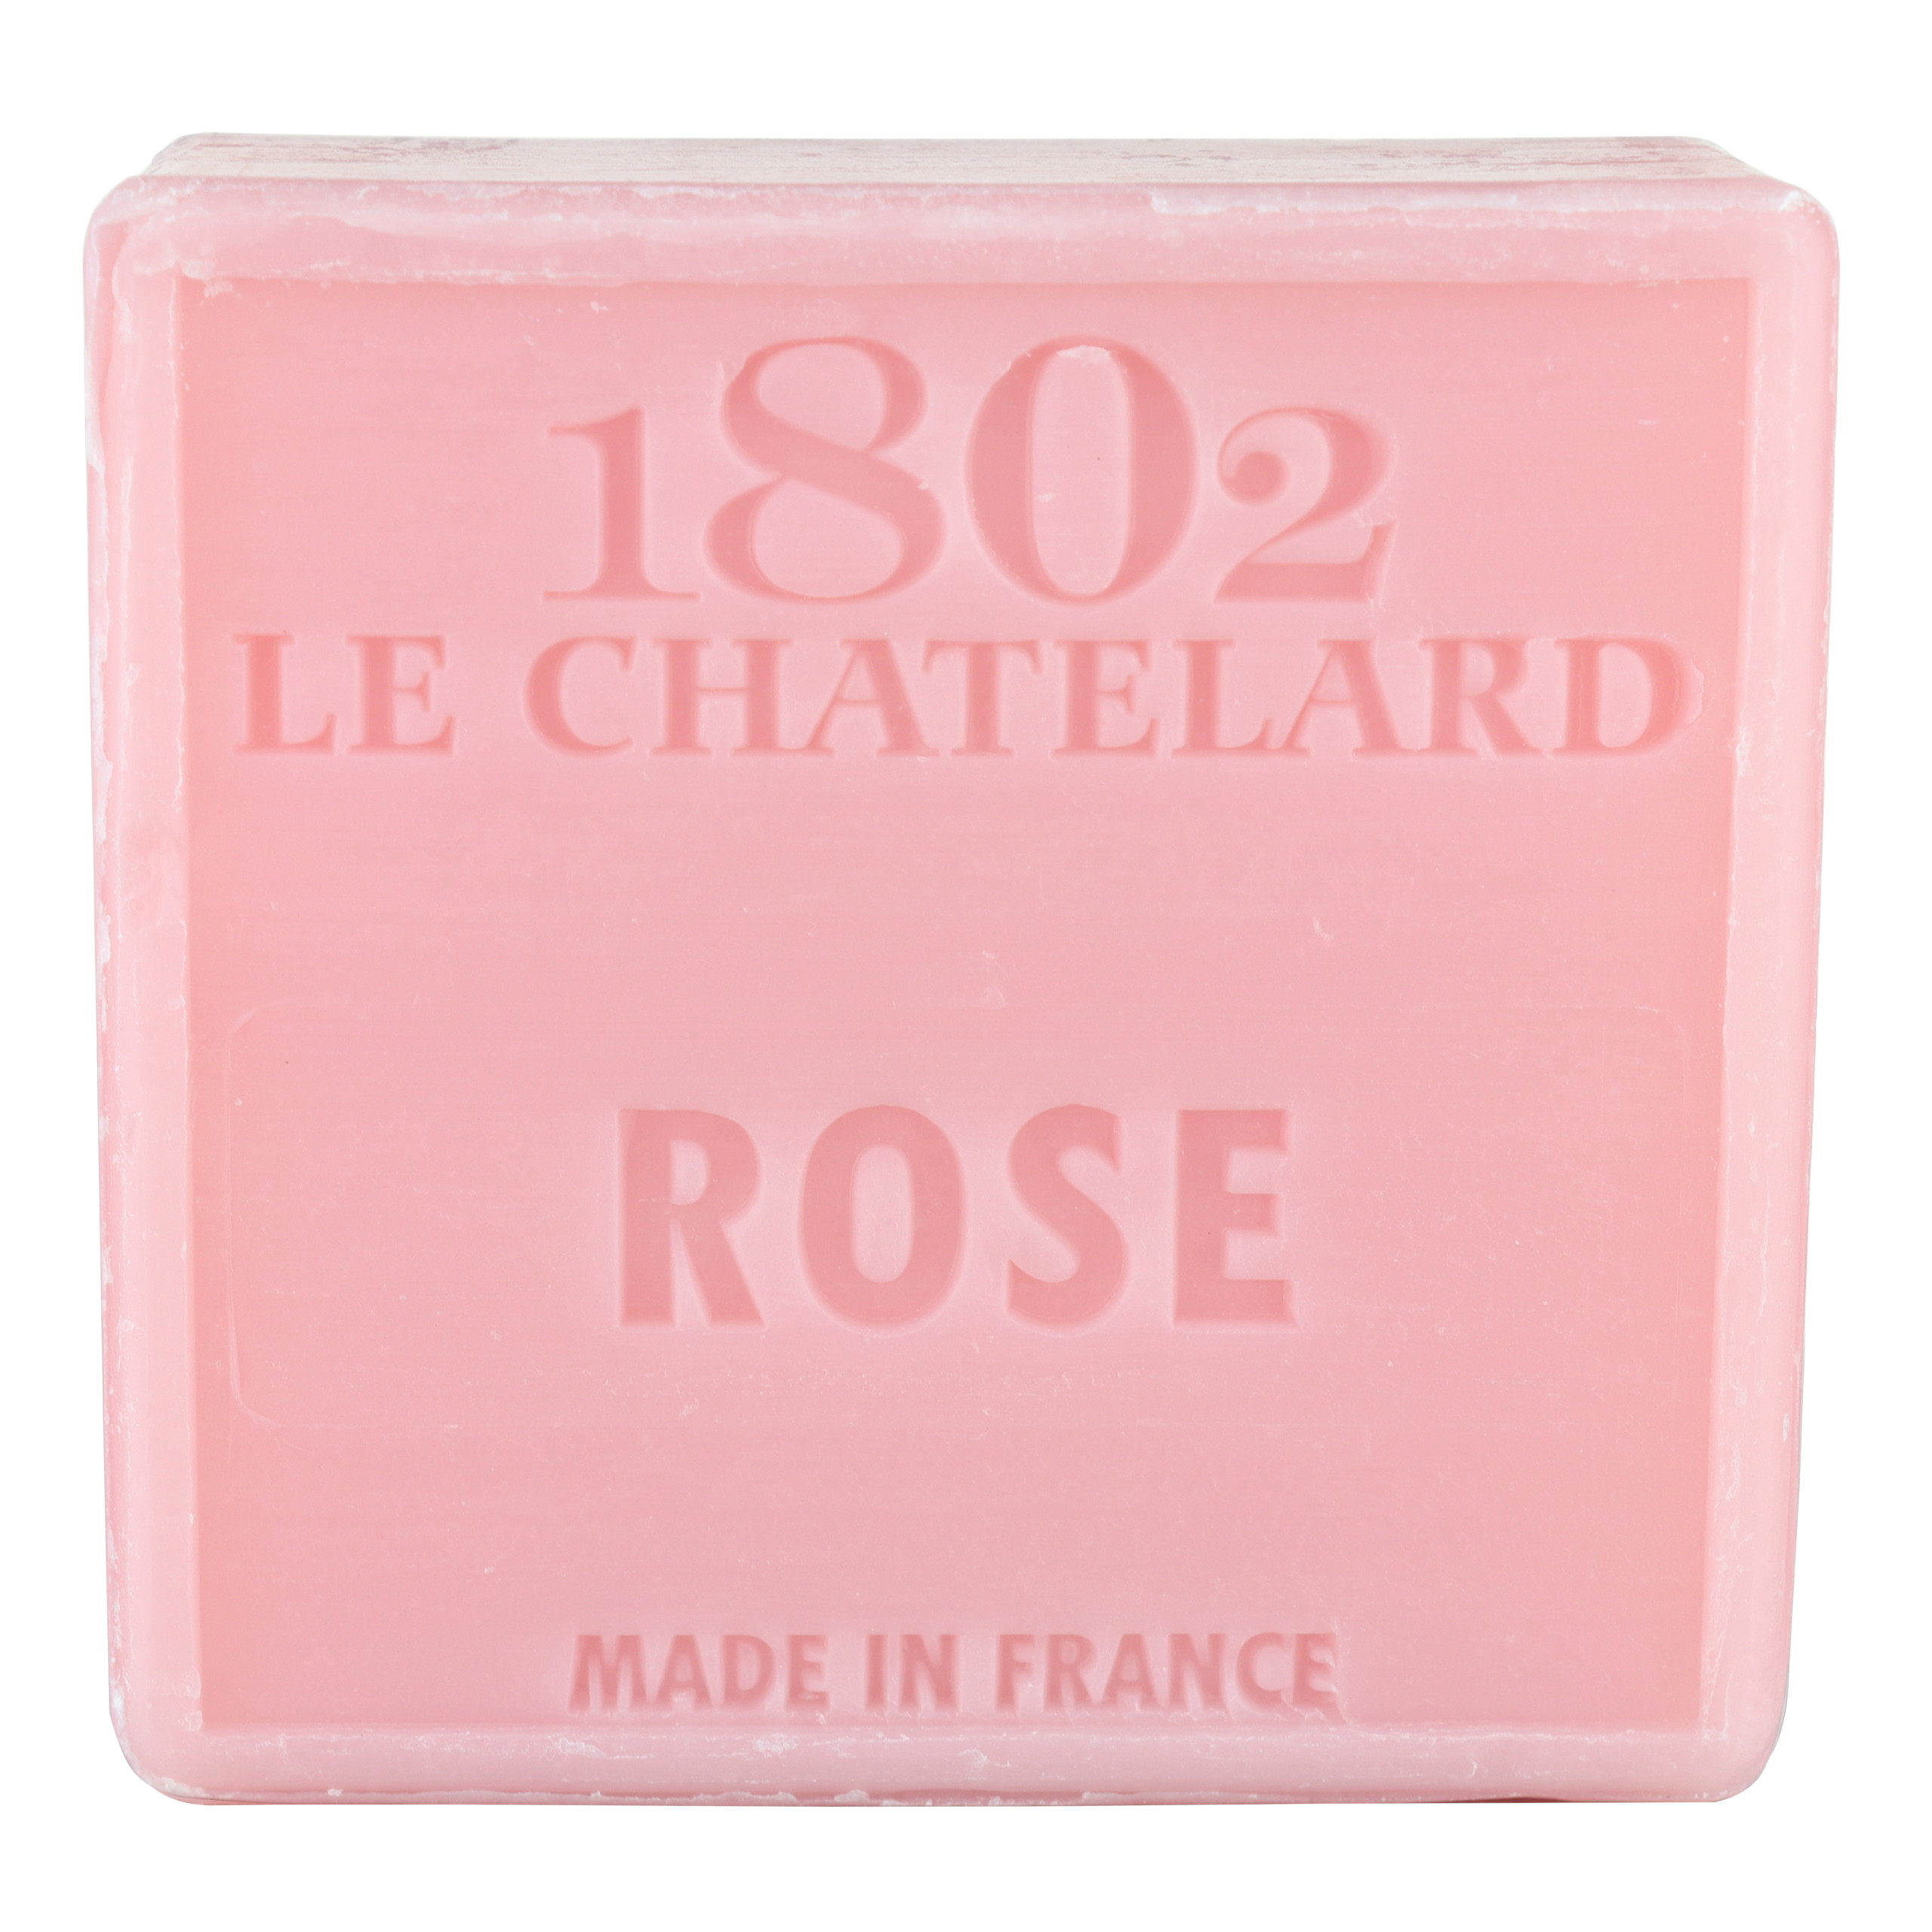 Mydło marsylskie Róża 100g Le Chatelard 1802 bez oleju palmowego